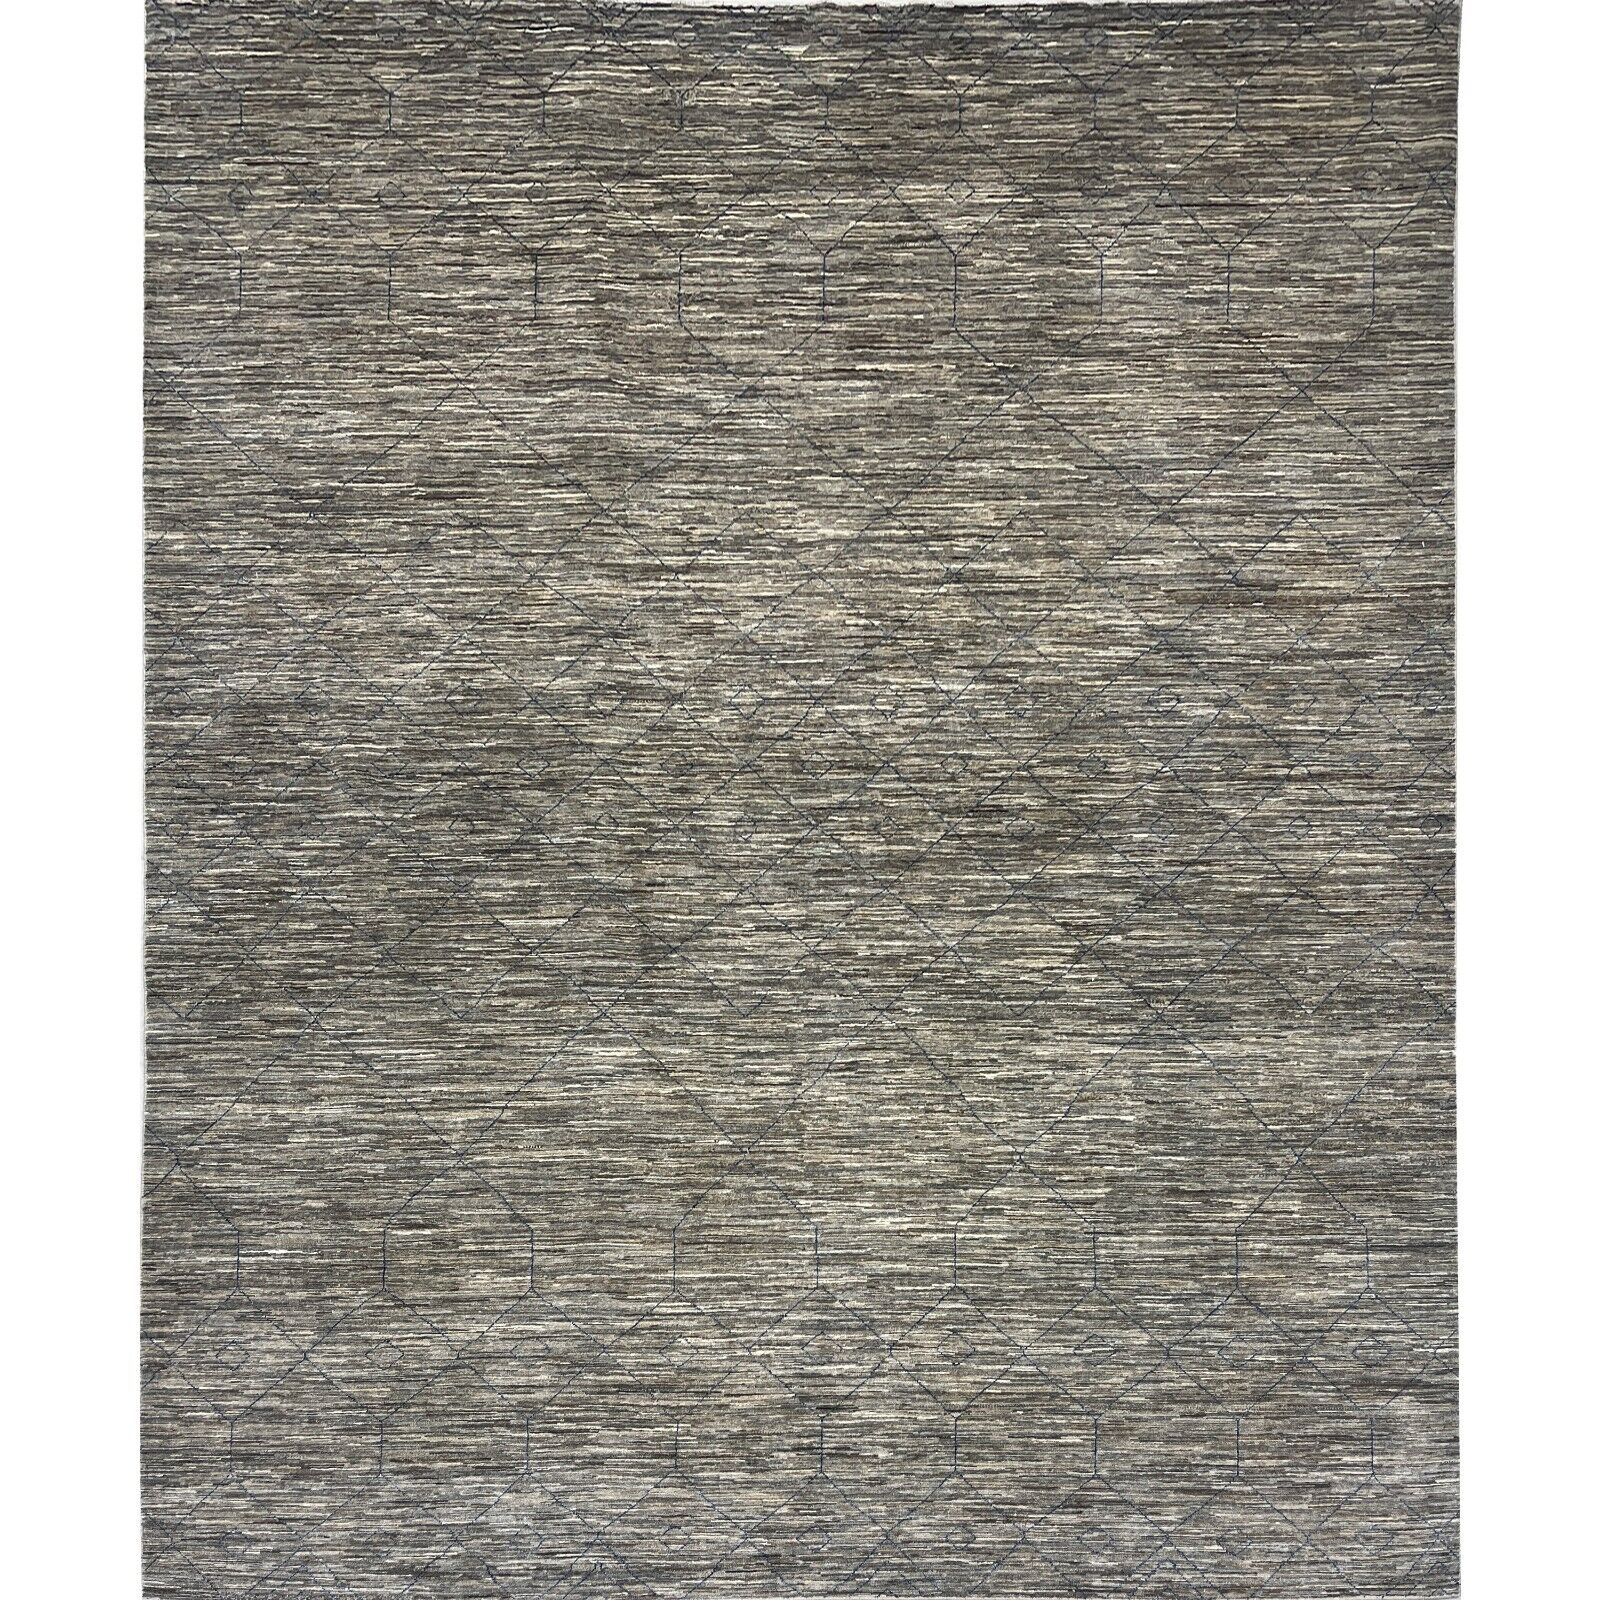 Handmade (9' x 12') Natural Gray Scandinavian Gabbeh Wool Area Rug